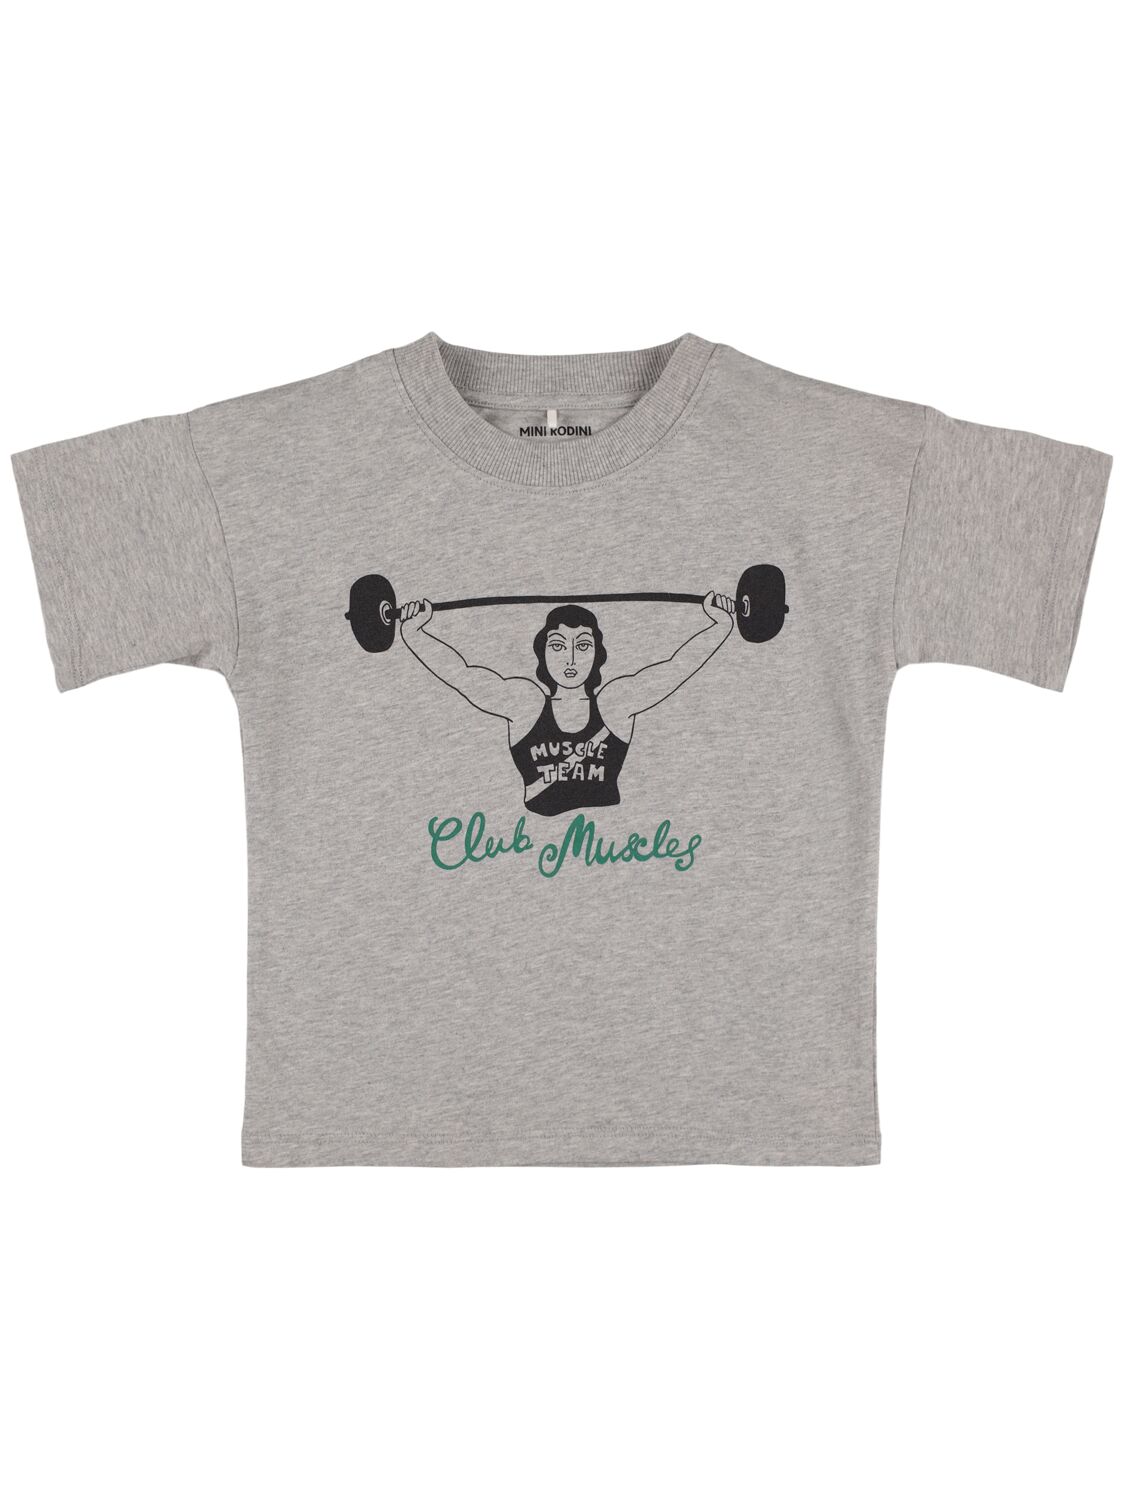 Mini Rodini Babies' Printed Organic Cotton T-shirt In Grey